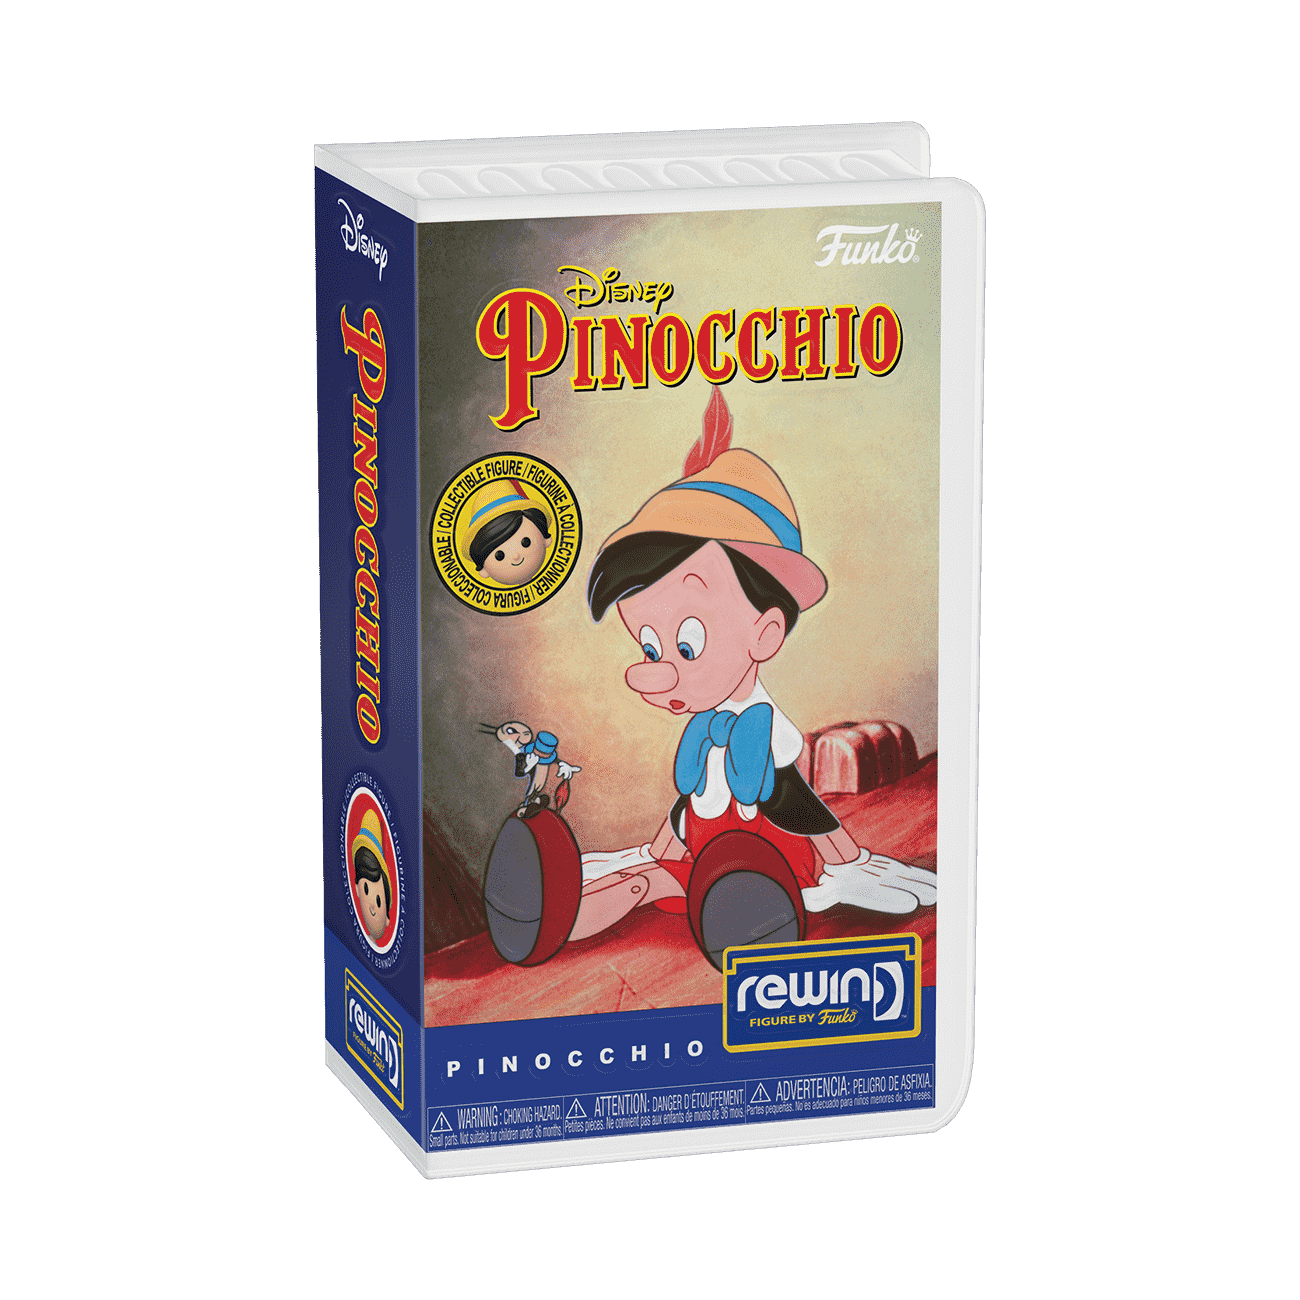 Buy REWIND Pinocchio at